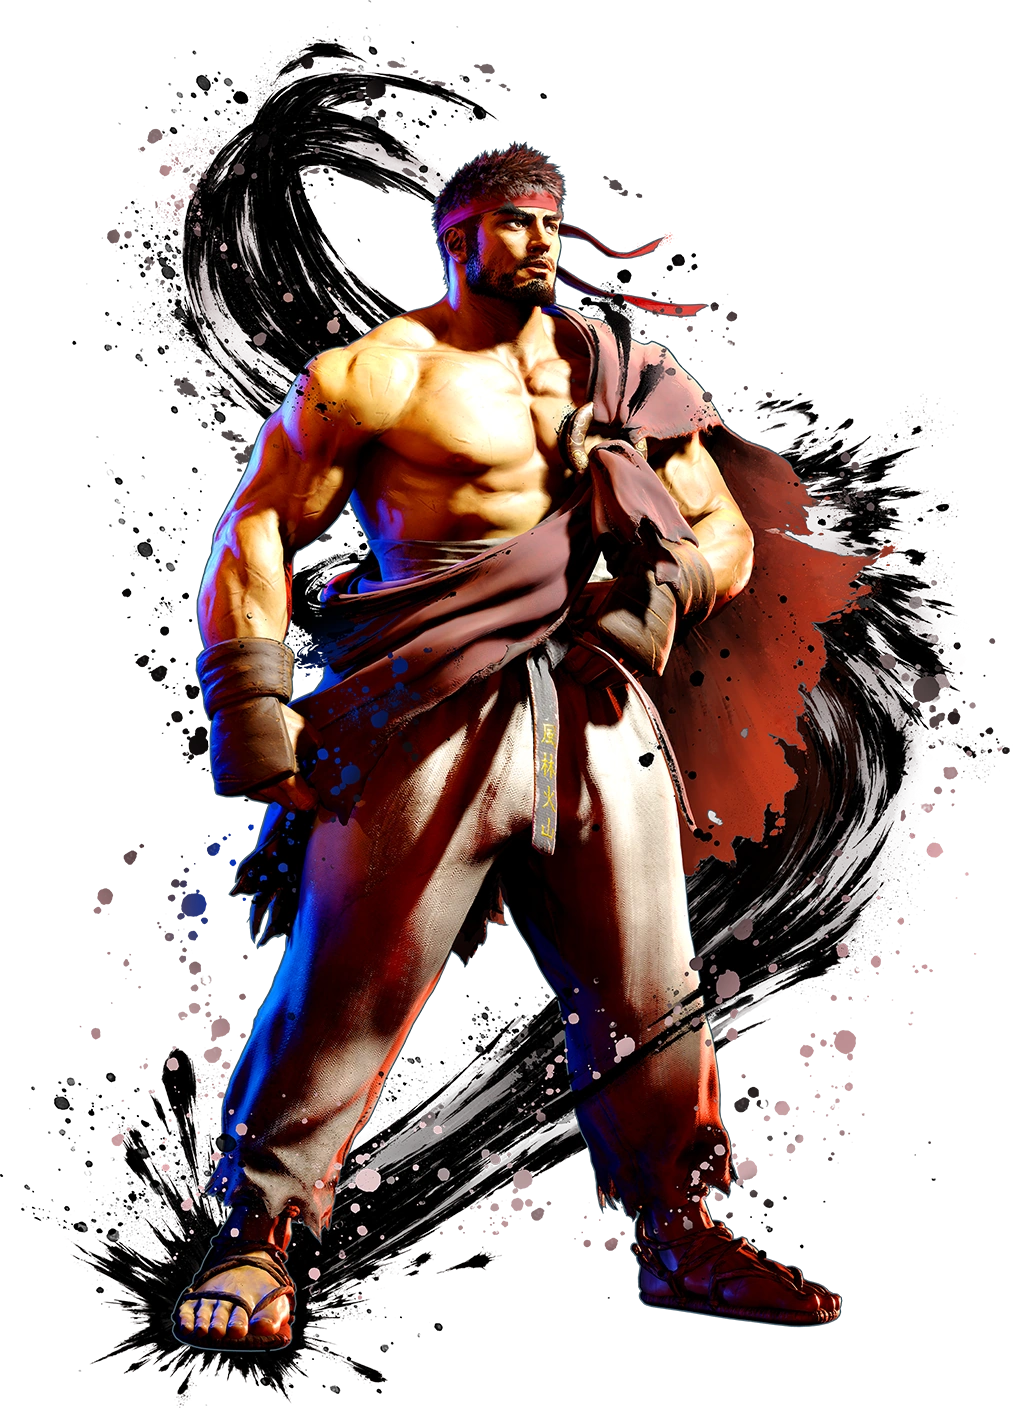 6 curiosidades sobre Akuma, personagem de Street Fighter